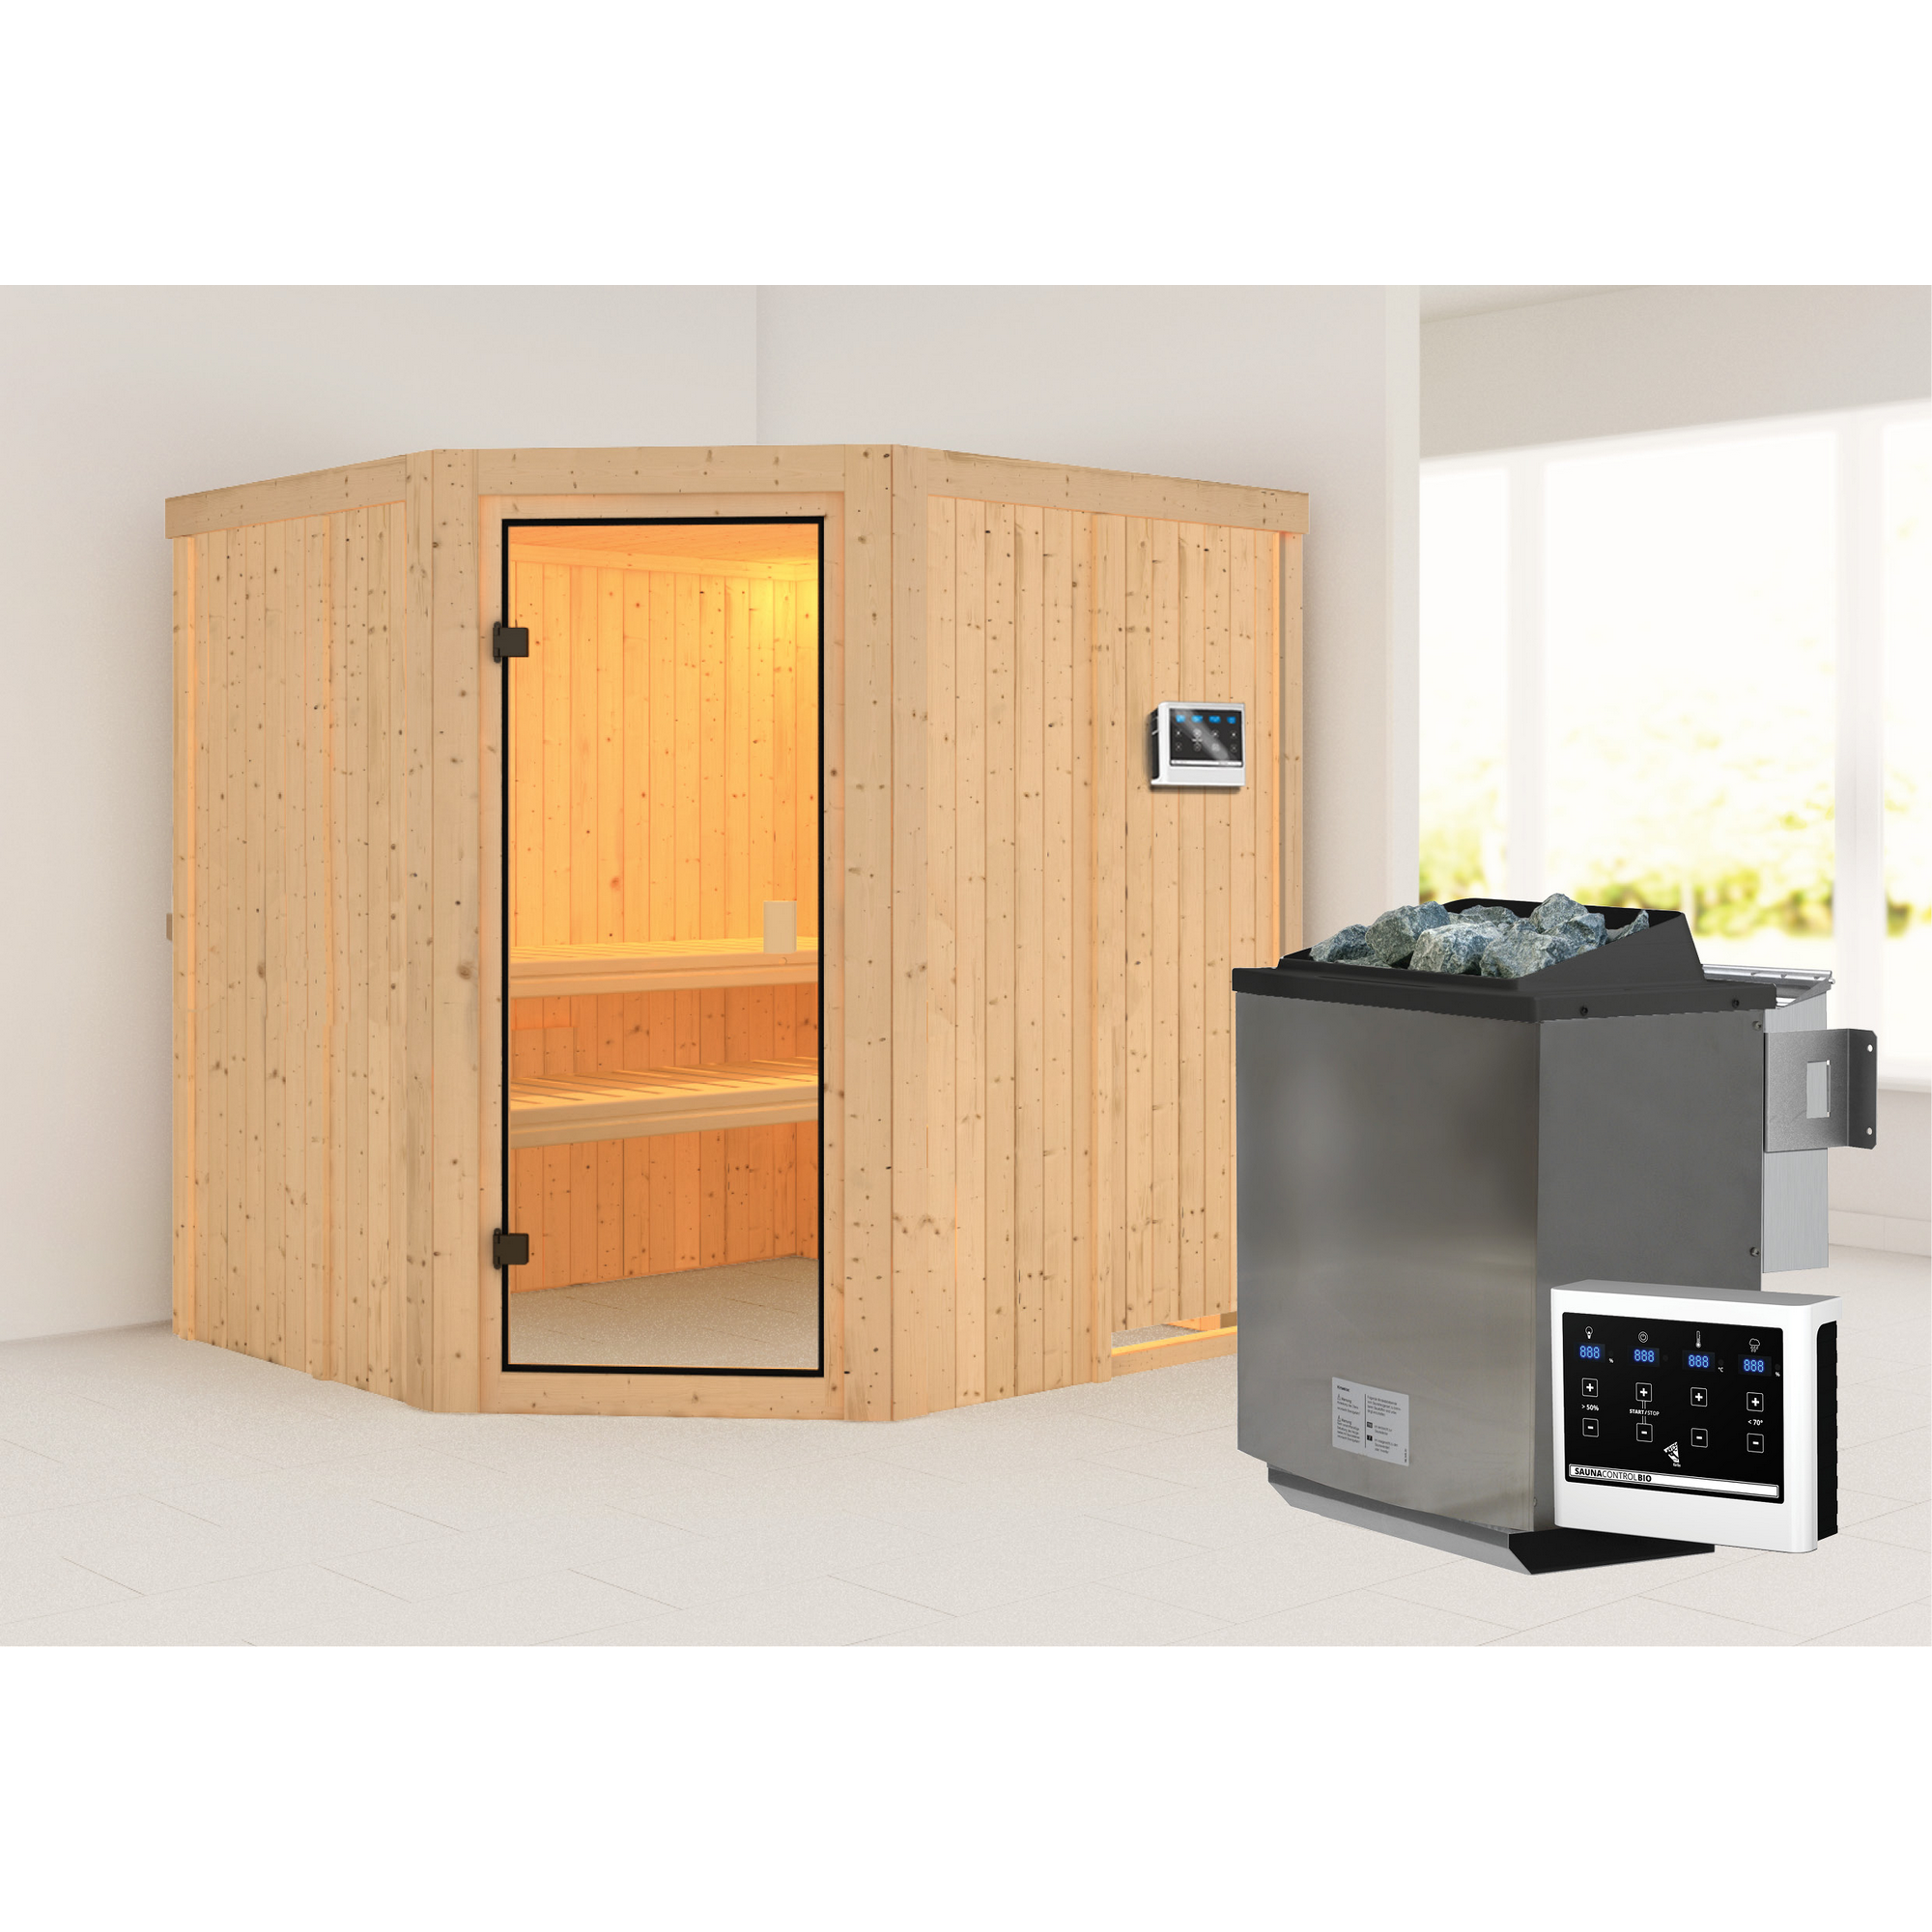 Elementsauna 'Berta' naturbelassen mit bronzierter Tür 9 kW Bio-Ofen mit externe Steuerung 196 x 178 x 198 cm + product picture